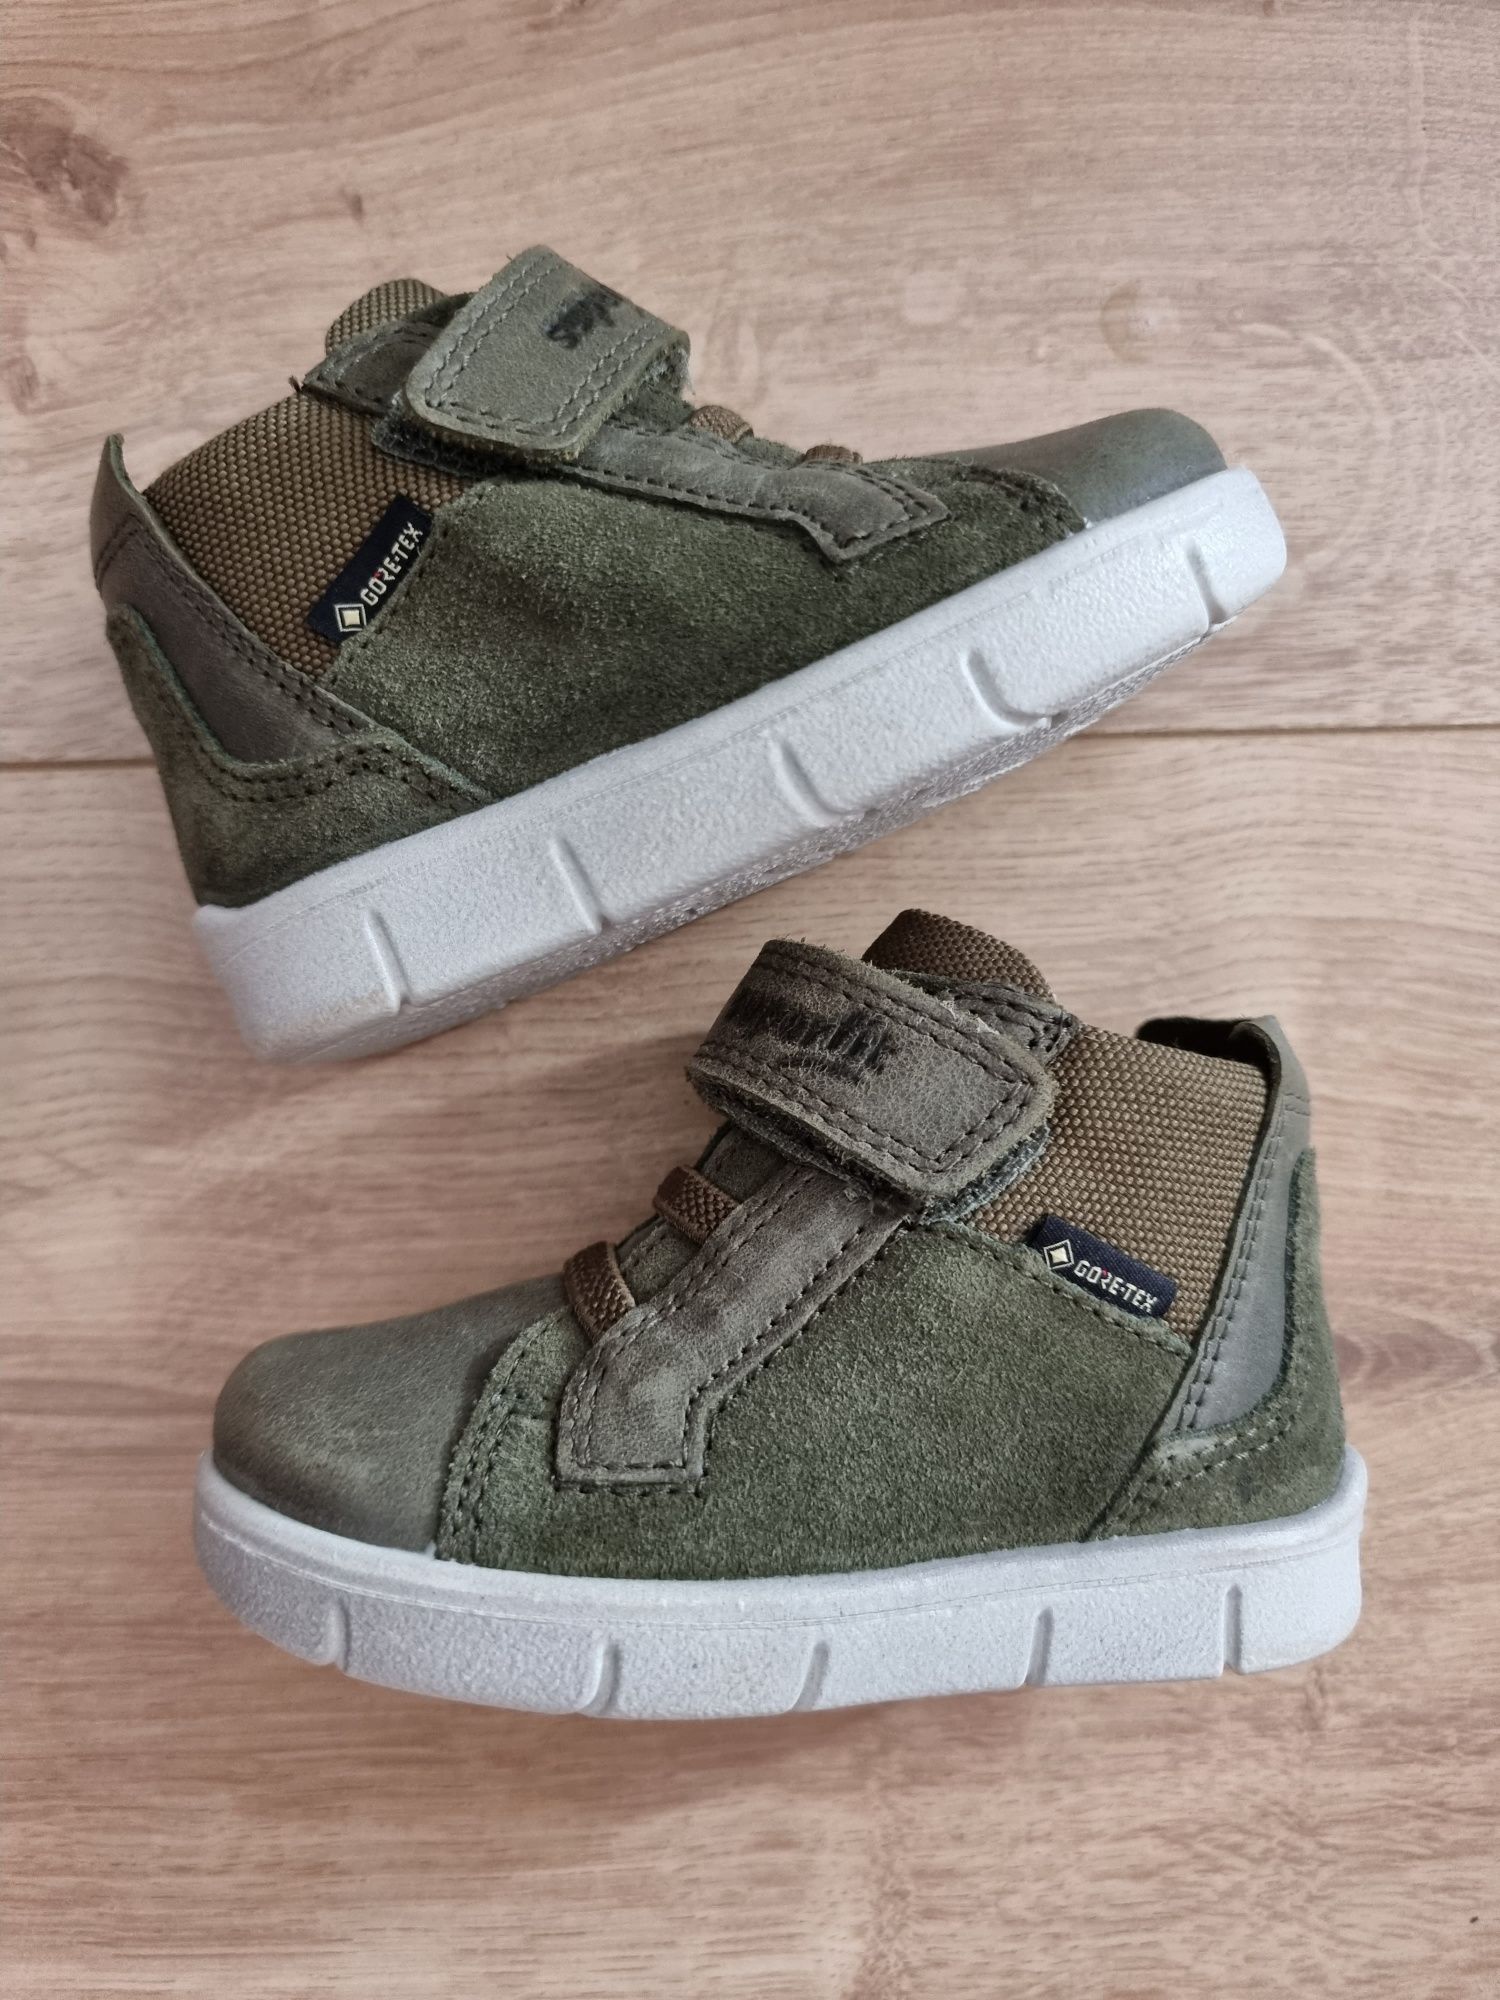 Pantofi/incaltaminte Superfit verde gore-tex marime 20 NOI